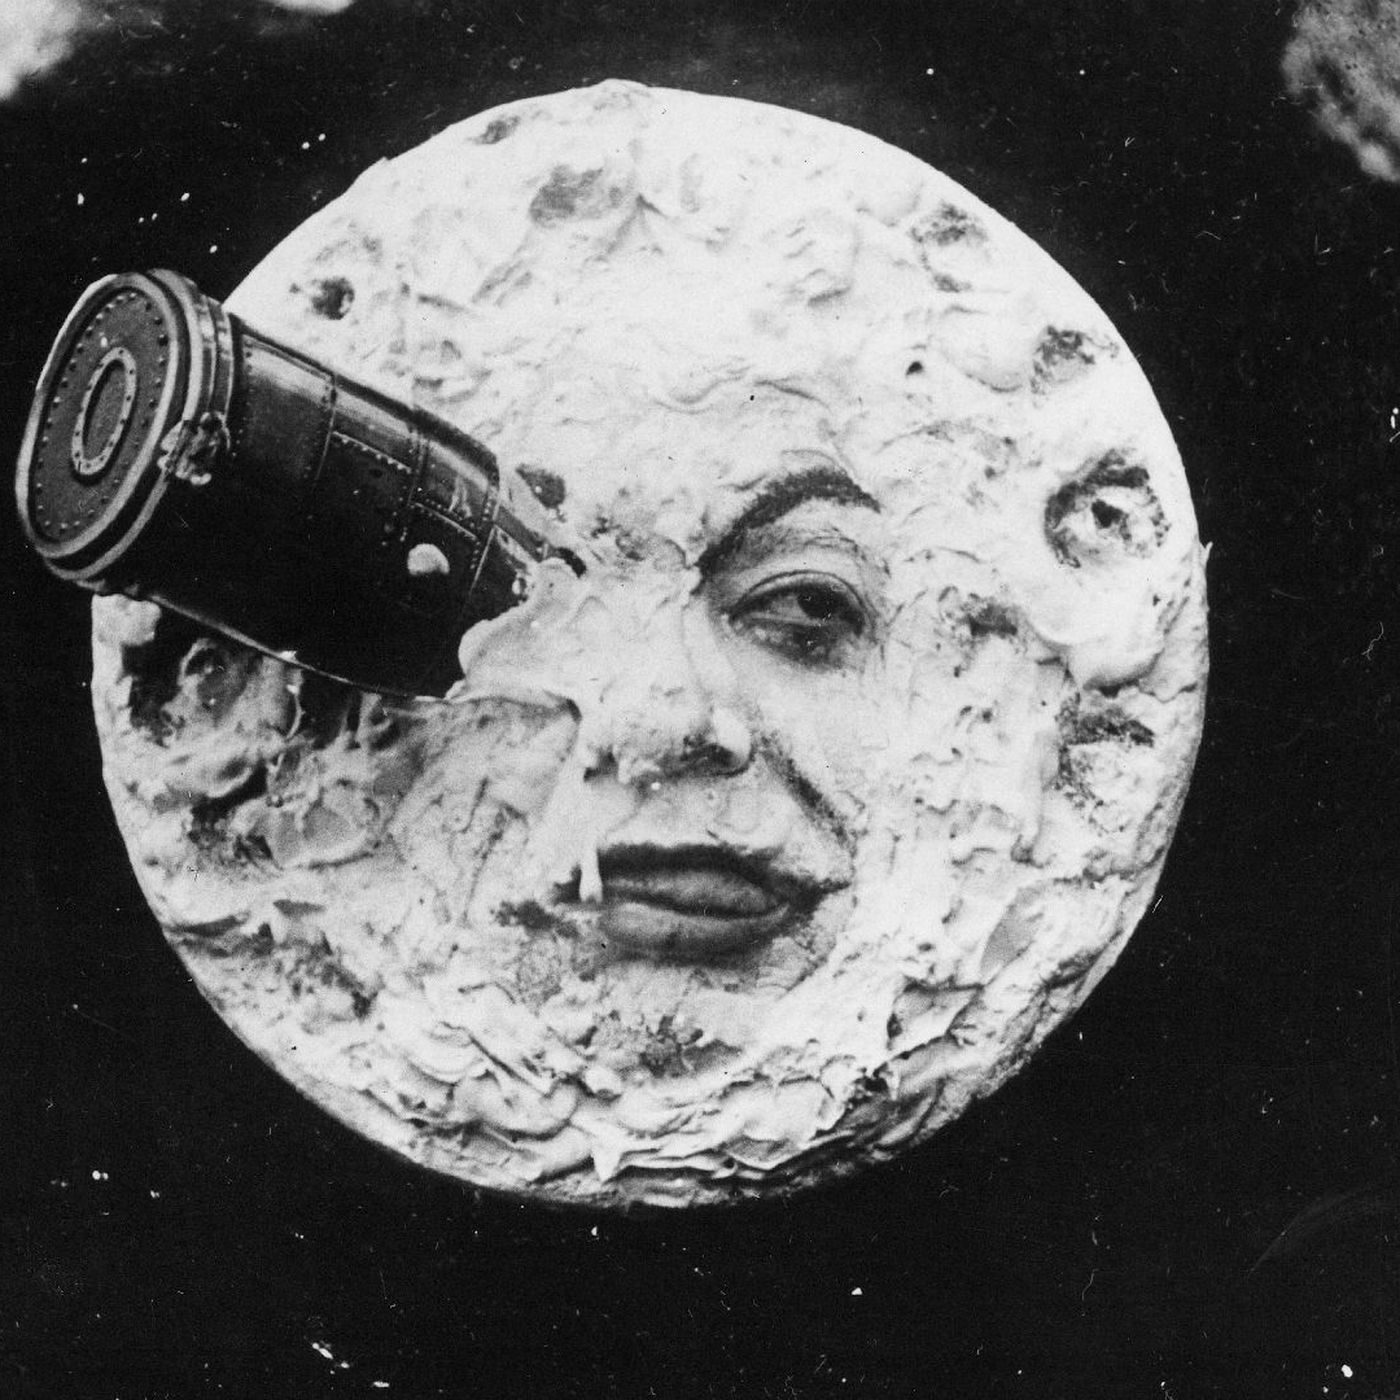 Archivo:Le Voyage dans la lune